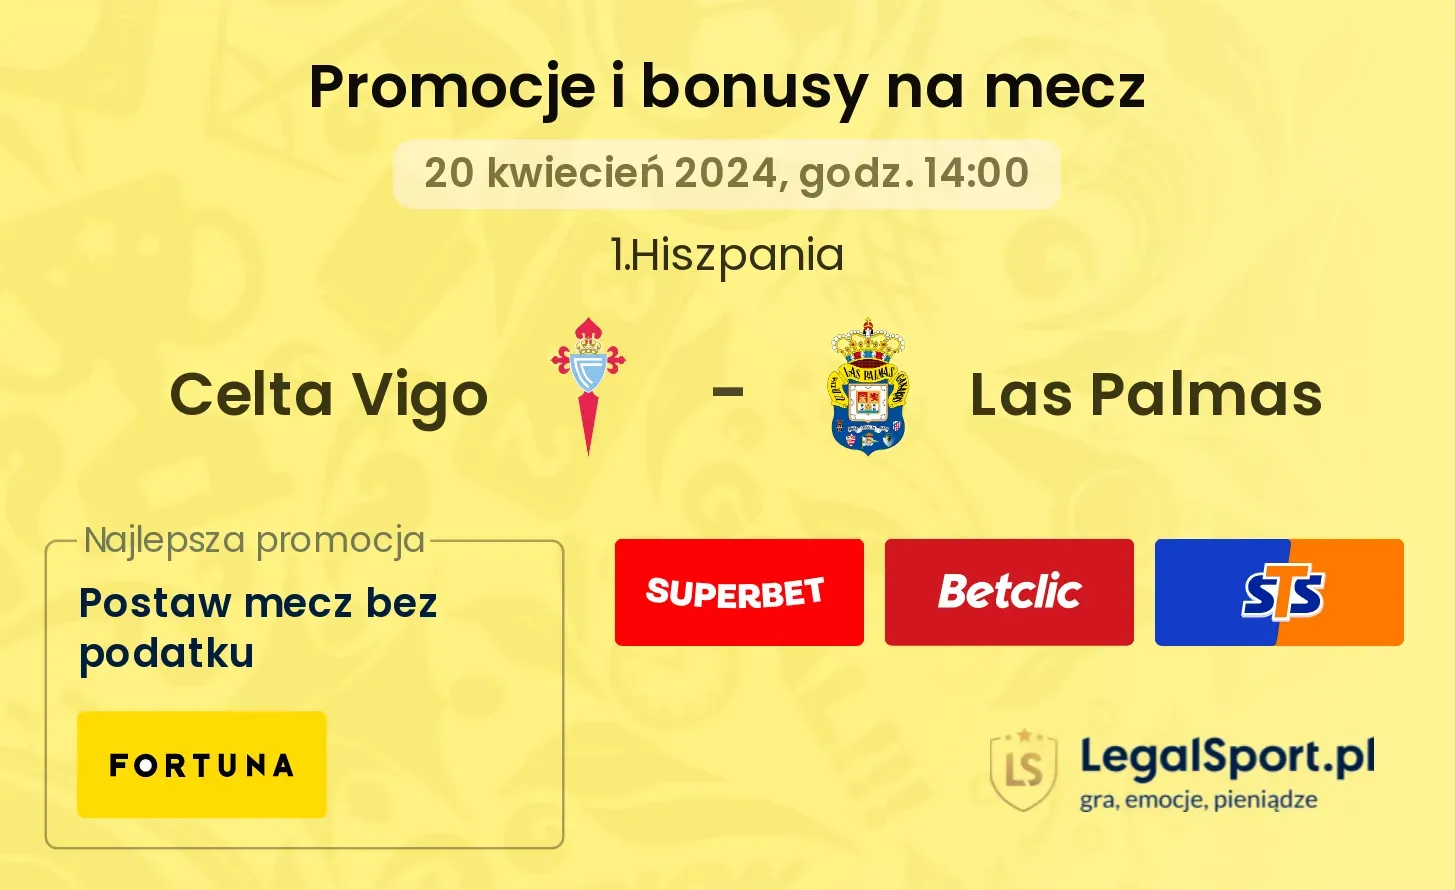 Celta Vigo - Las Palmas promocje bonusy na mecz